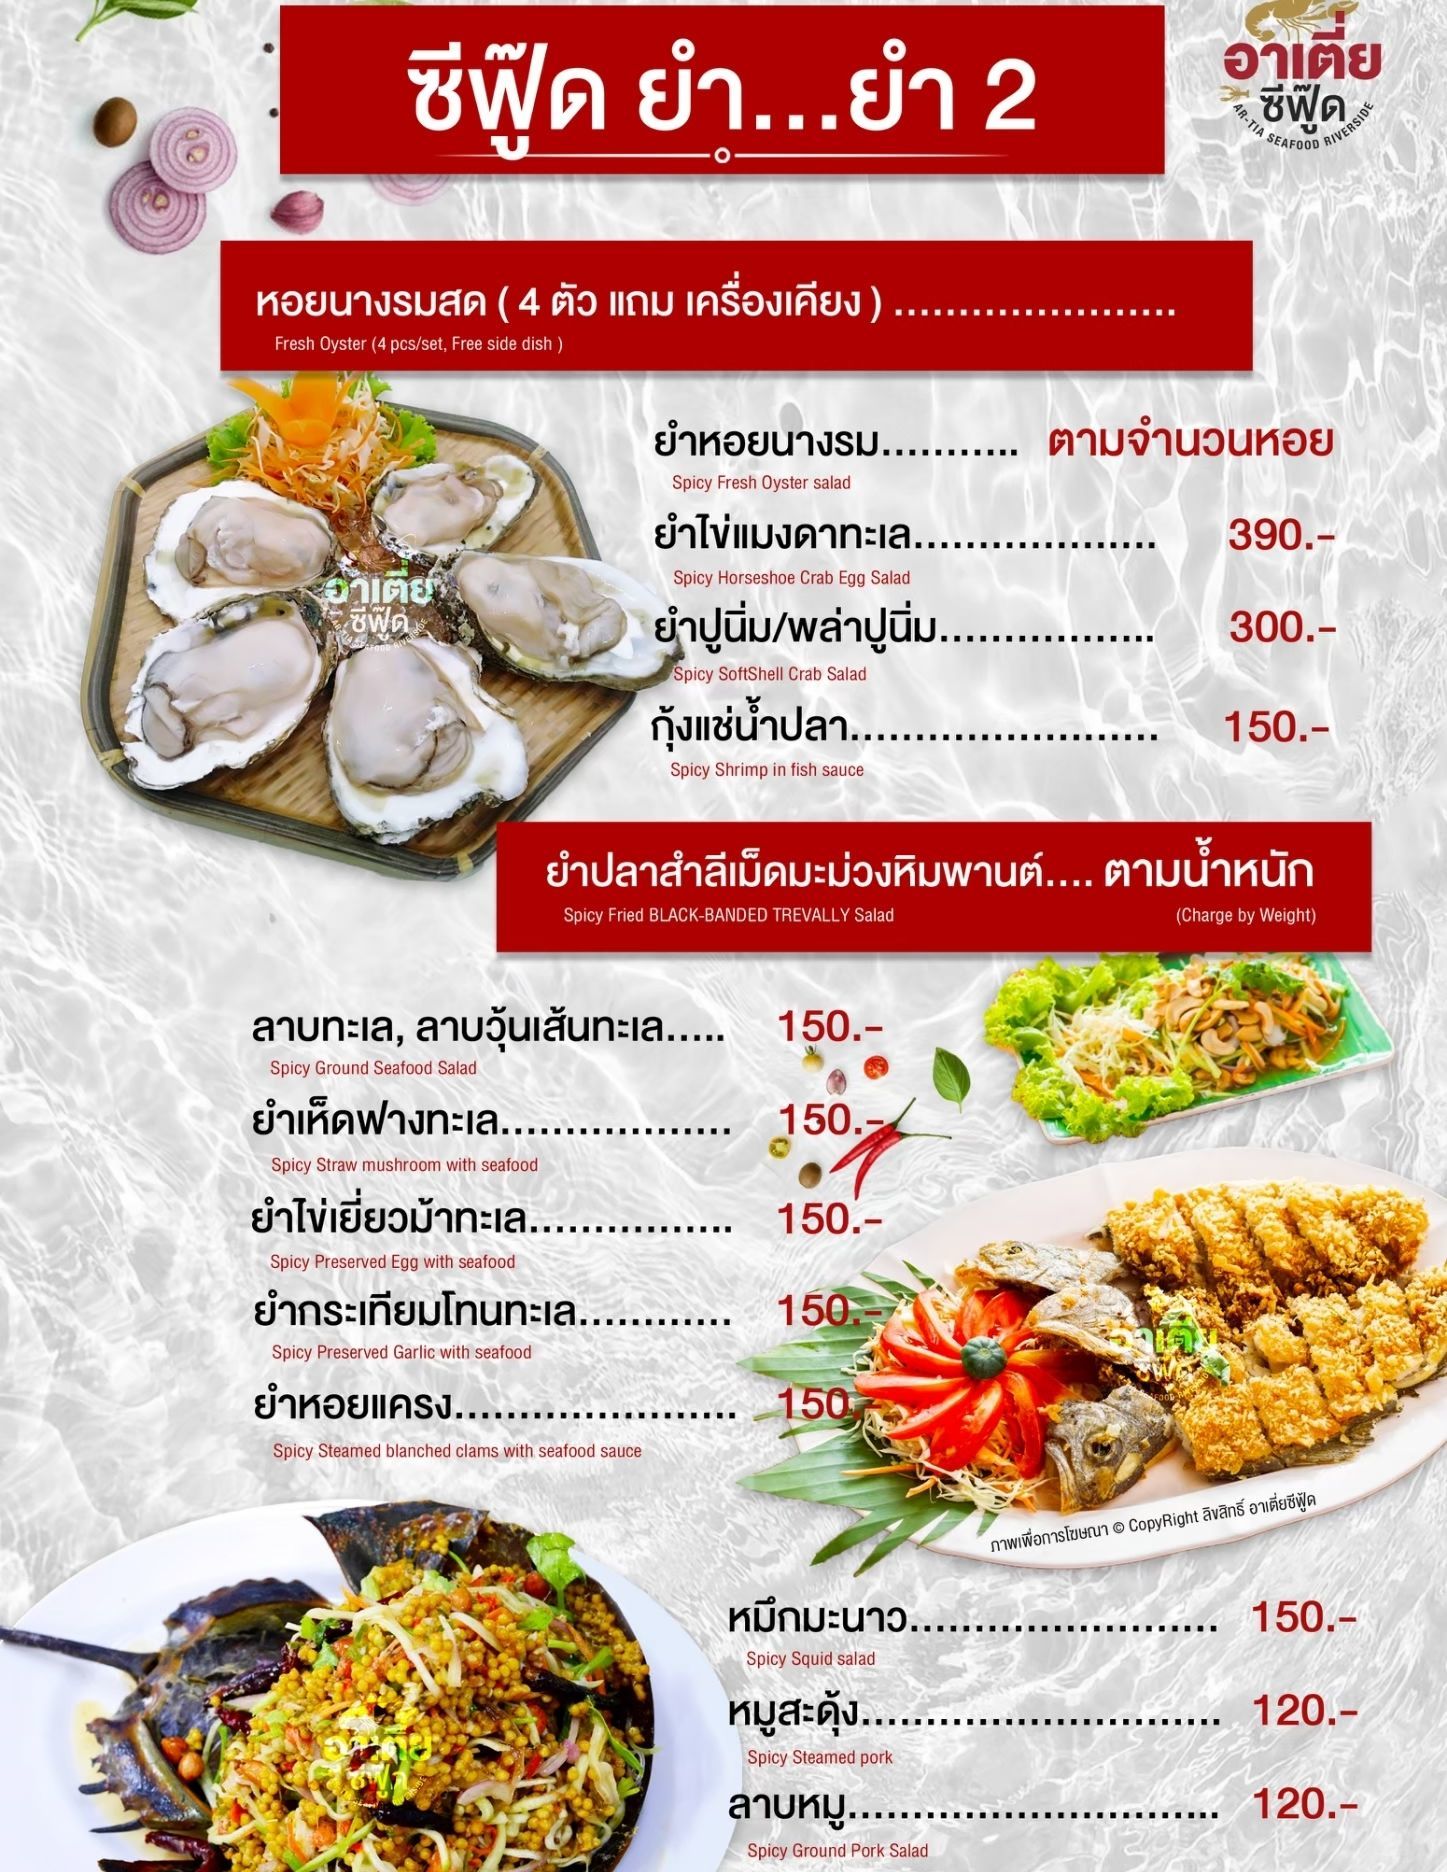 เมนูอาหารไทย ร้านอาเตี่ยซีฟู้ด ร้านอาหาร สุราษฏร์ธานี ยำไข่แมงดา ลาย ยำทะเล ยำหอย ยำปู กุ้งแช่น้ำปลา